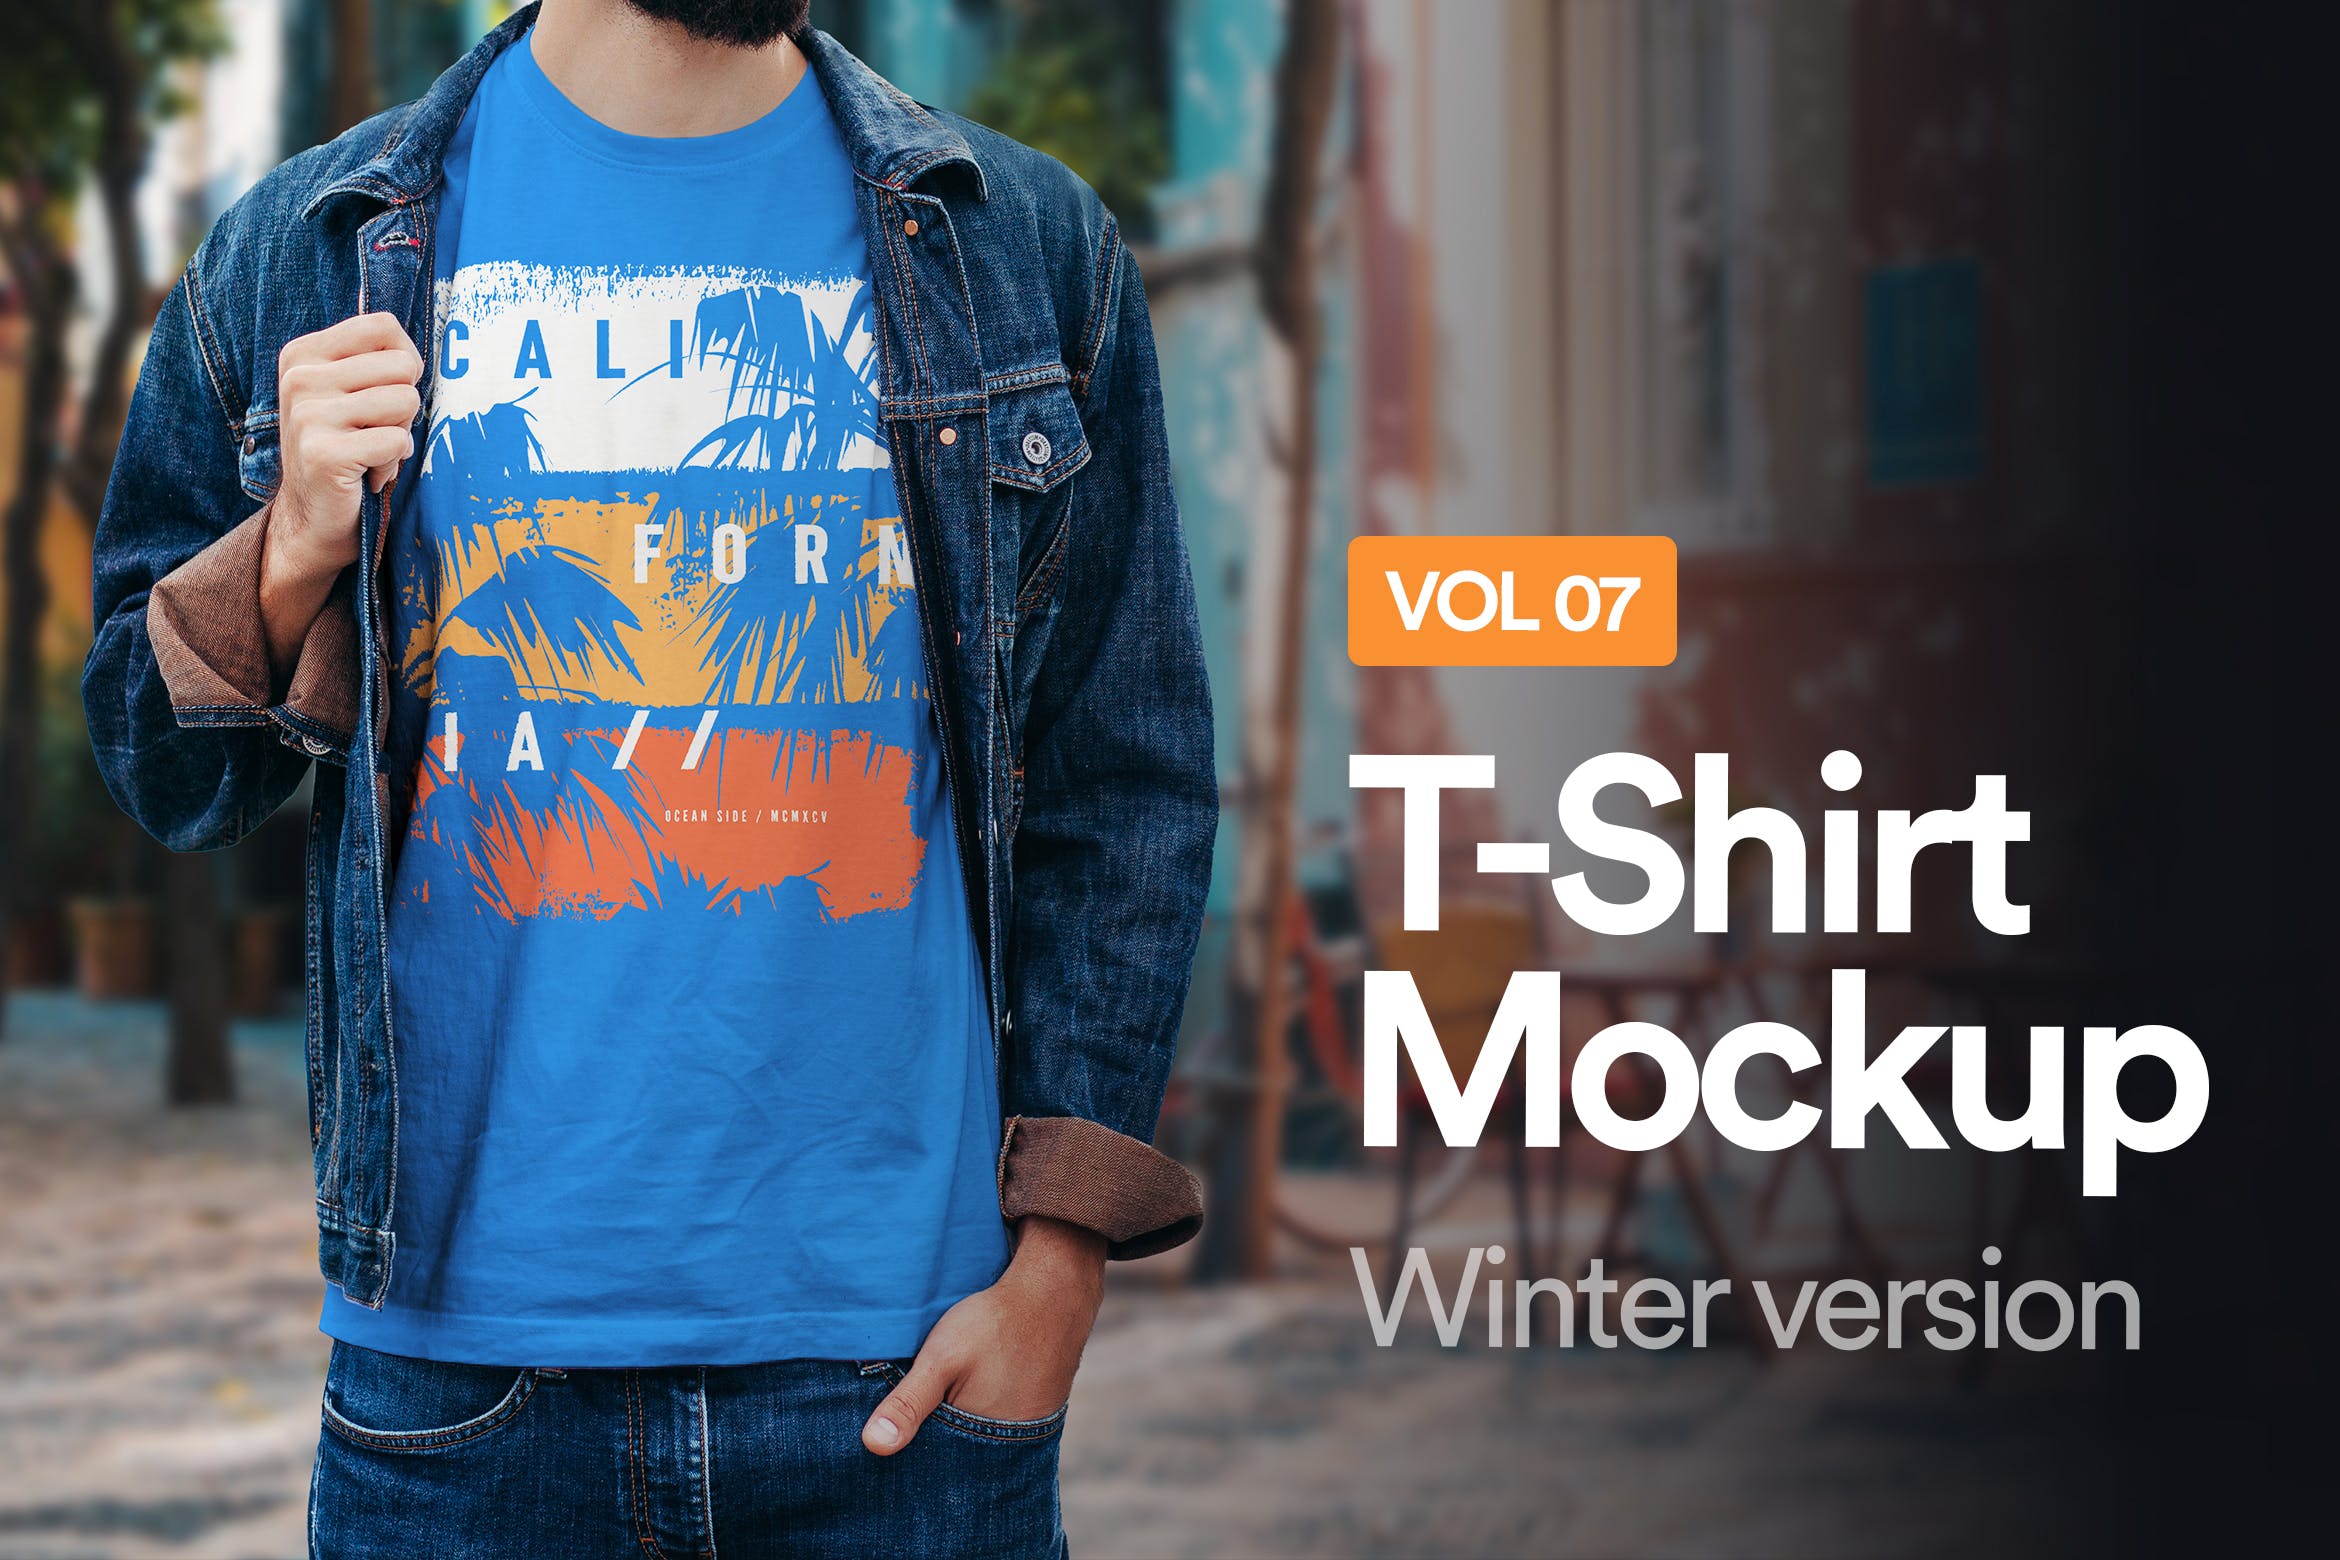 冬日T恤印花设计效果图样机16设计网精选07 Winter T-Shirt Mockup 07插图